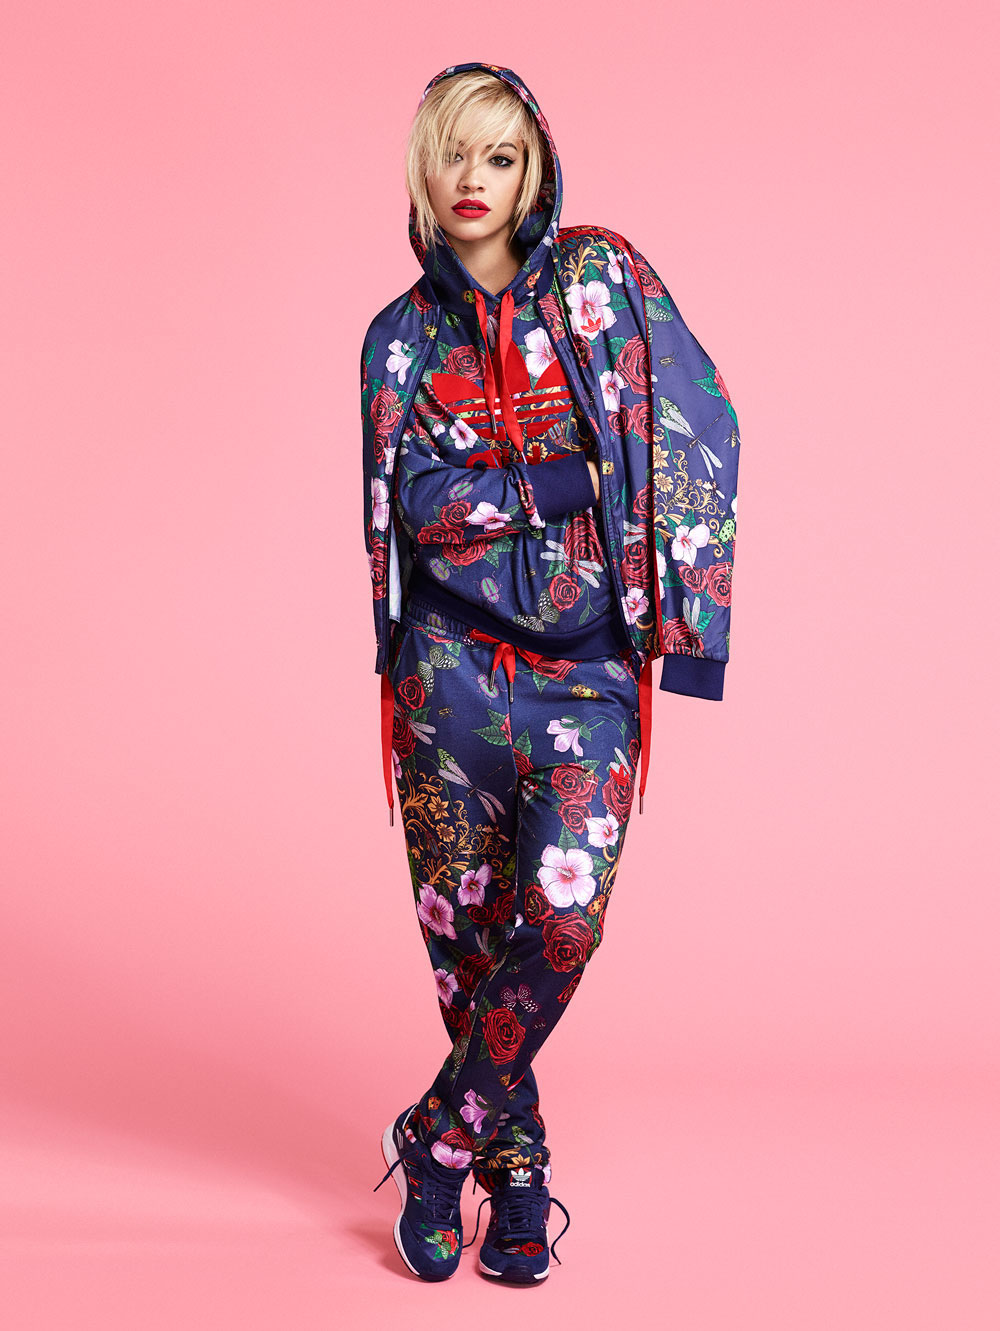 Adidas Originals for Rita Ora FW14 on Behance